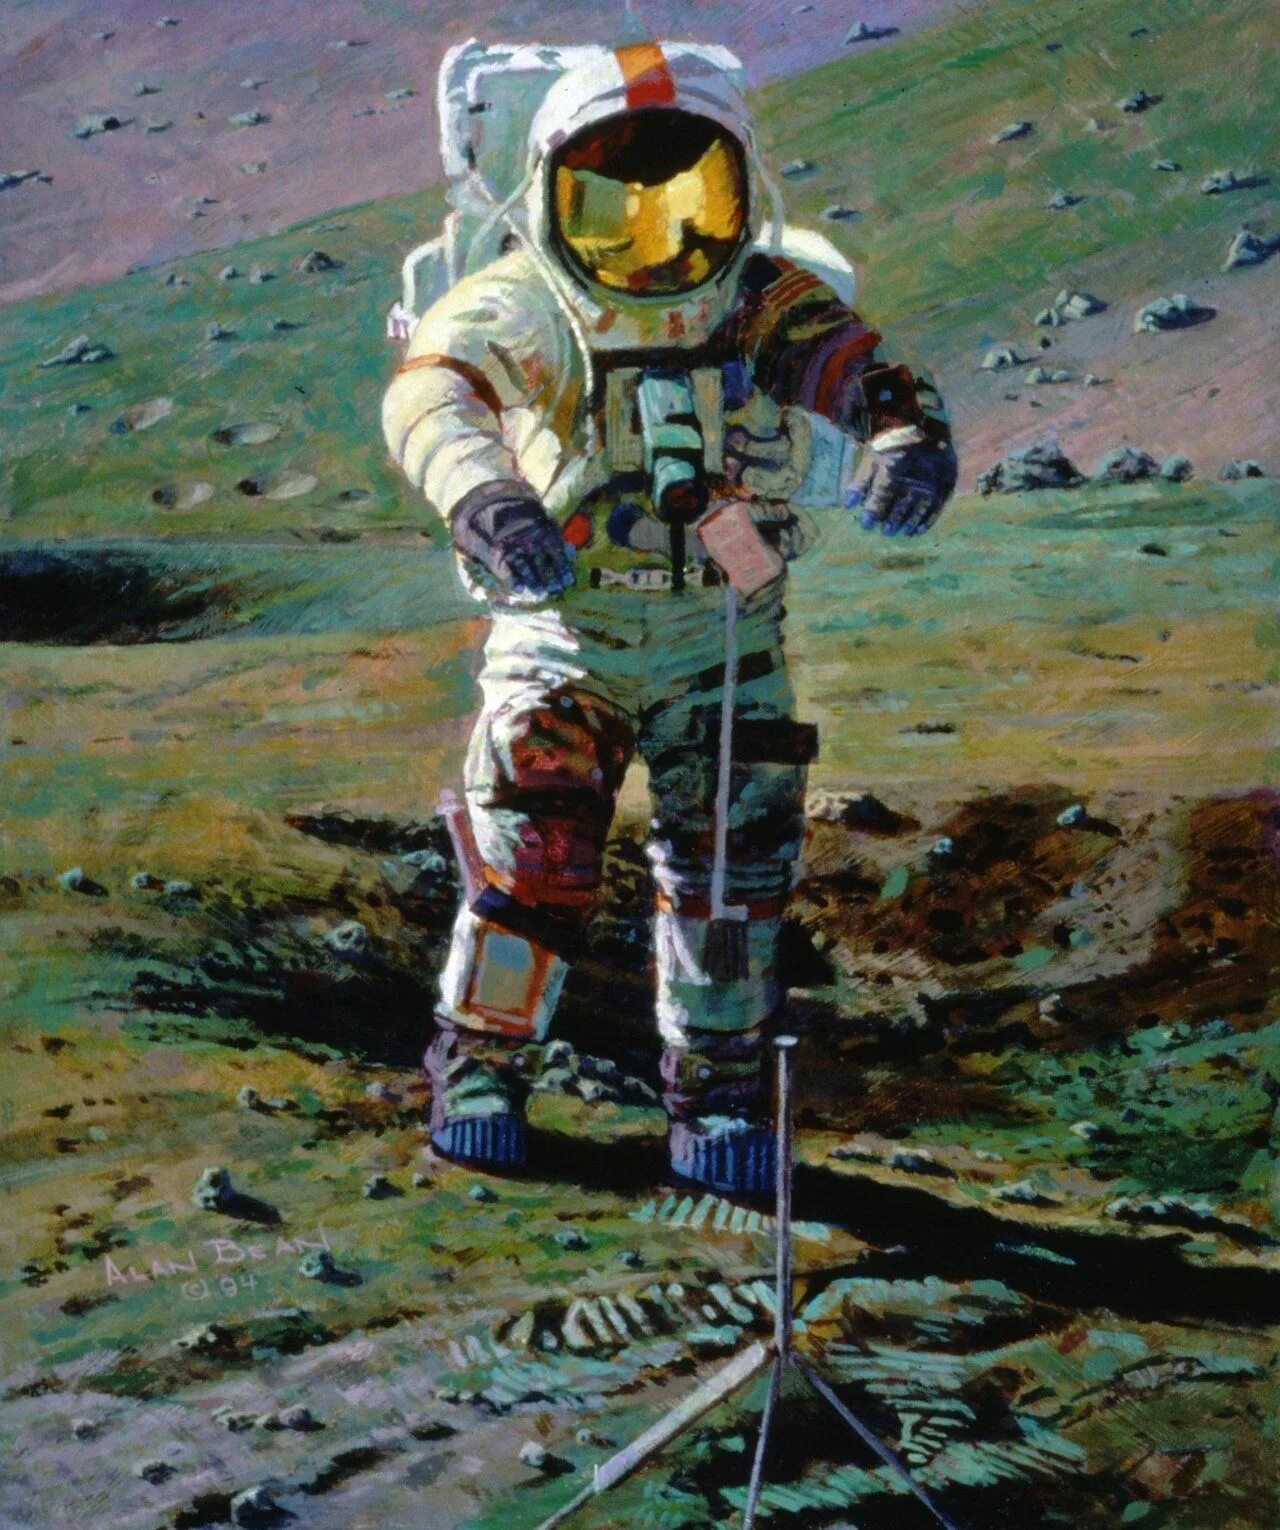 Аллан Бин Аполлон 12. Космический корабль Аполлон картина Леонова. Самый известный космонавт художник